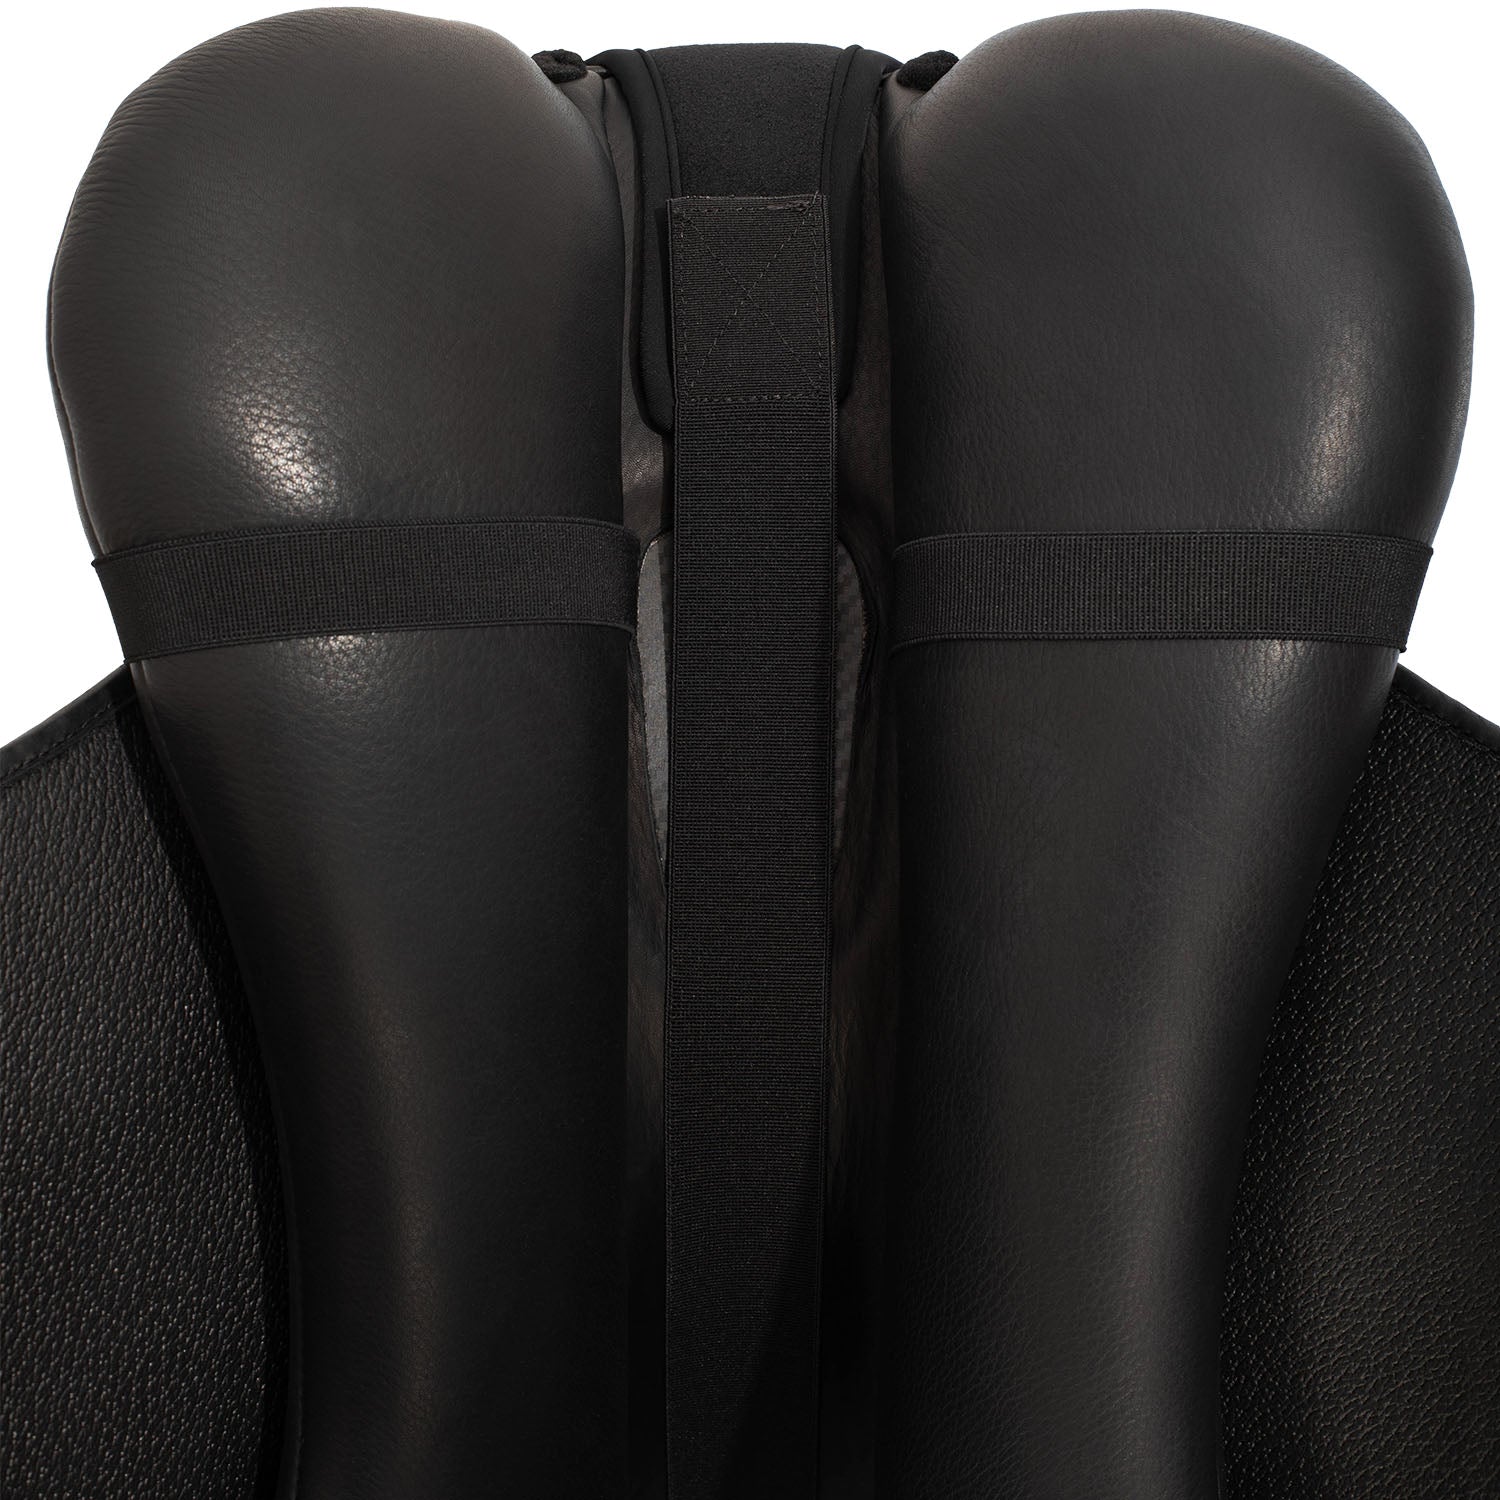 Sitz Bezug Ortho pubis dressage 20mm gel classic seat saver Dri-lex - Reitstiefel Kandel - Dein Reitshop